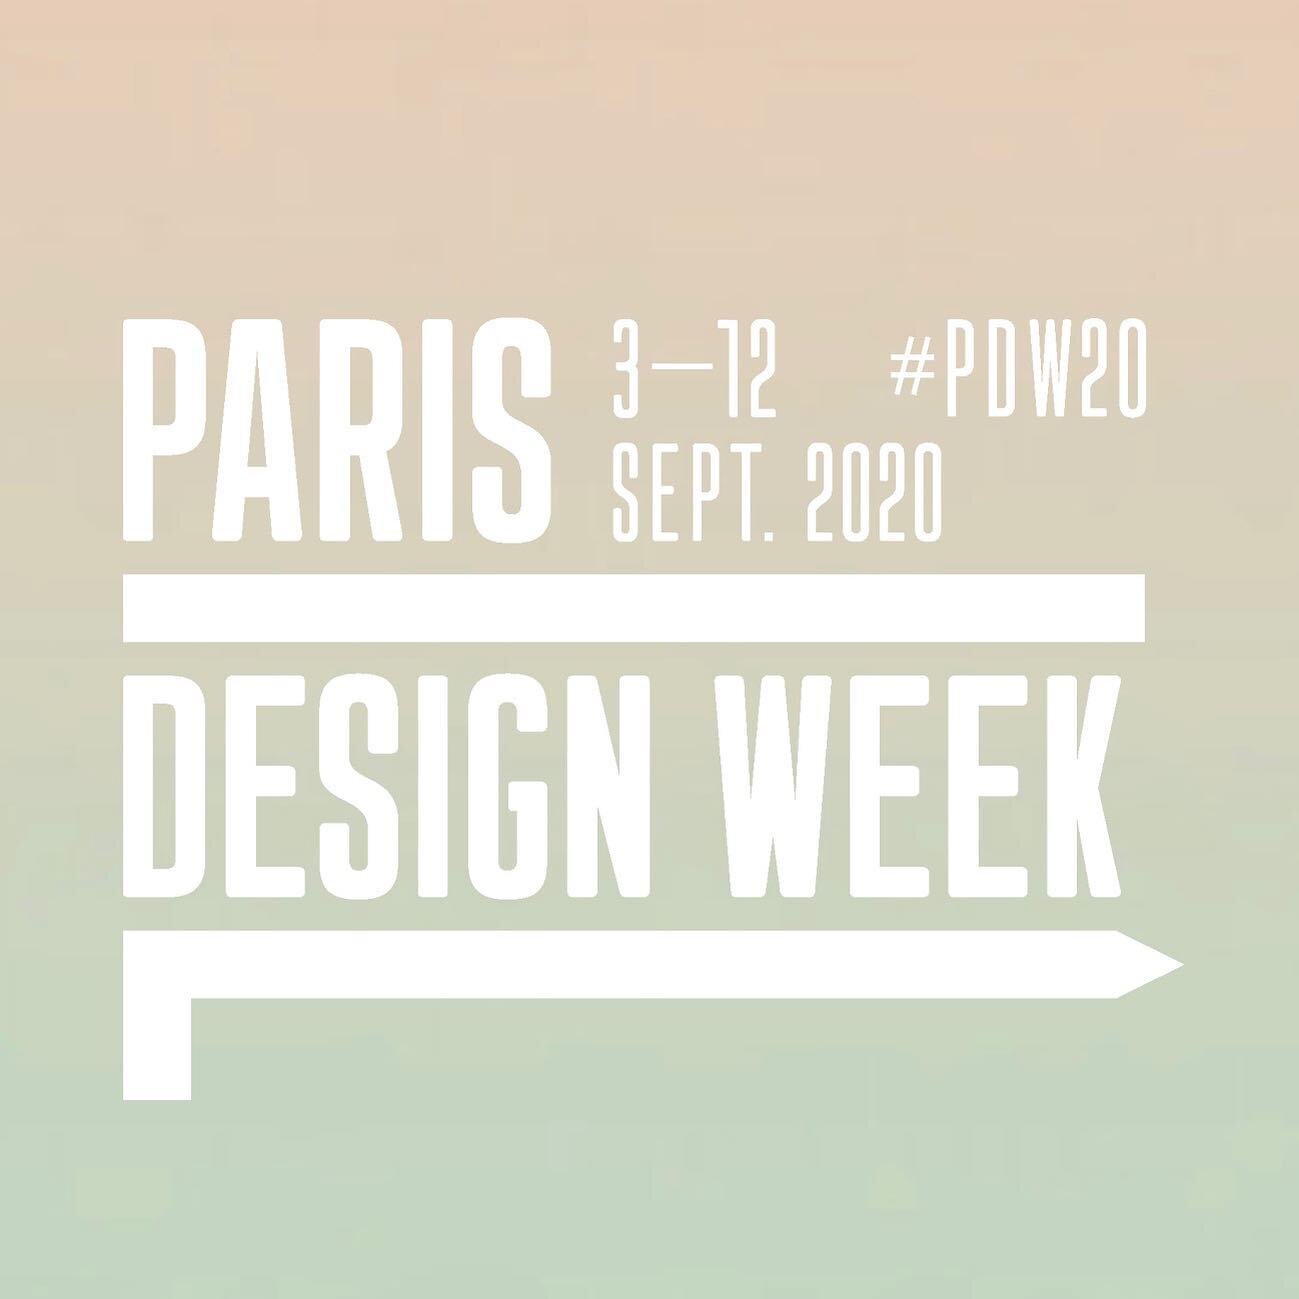 À l'occasion de la Paris Design Week 2020, le Collectif Coulanges vous invite à entrer dans la cour d'honneur pour découvrir le travail des artistes Clémence Althabegoïty et Jasper Zehetgruber. 

3-12 septembre 2020
Lun-Ven : 13h-18h
Sam-Dim : 1